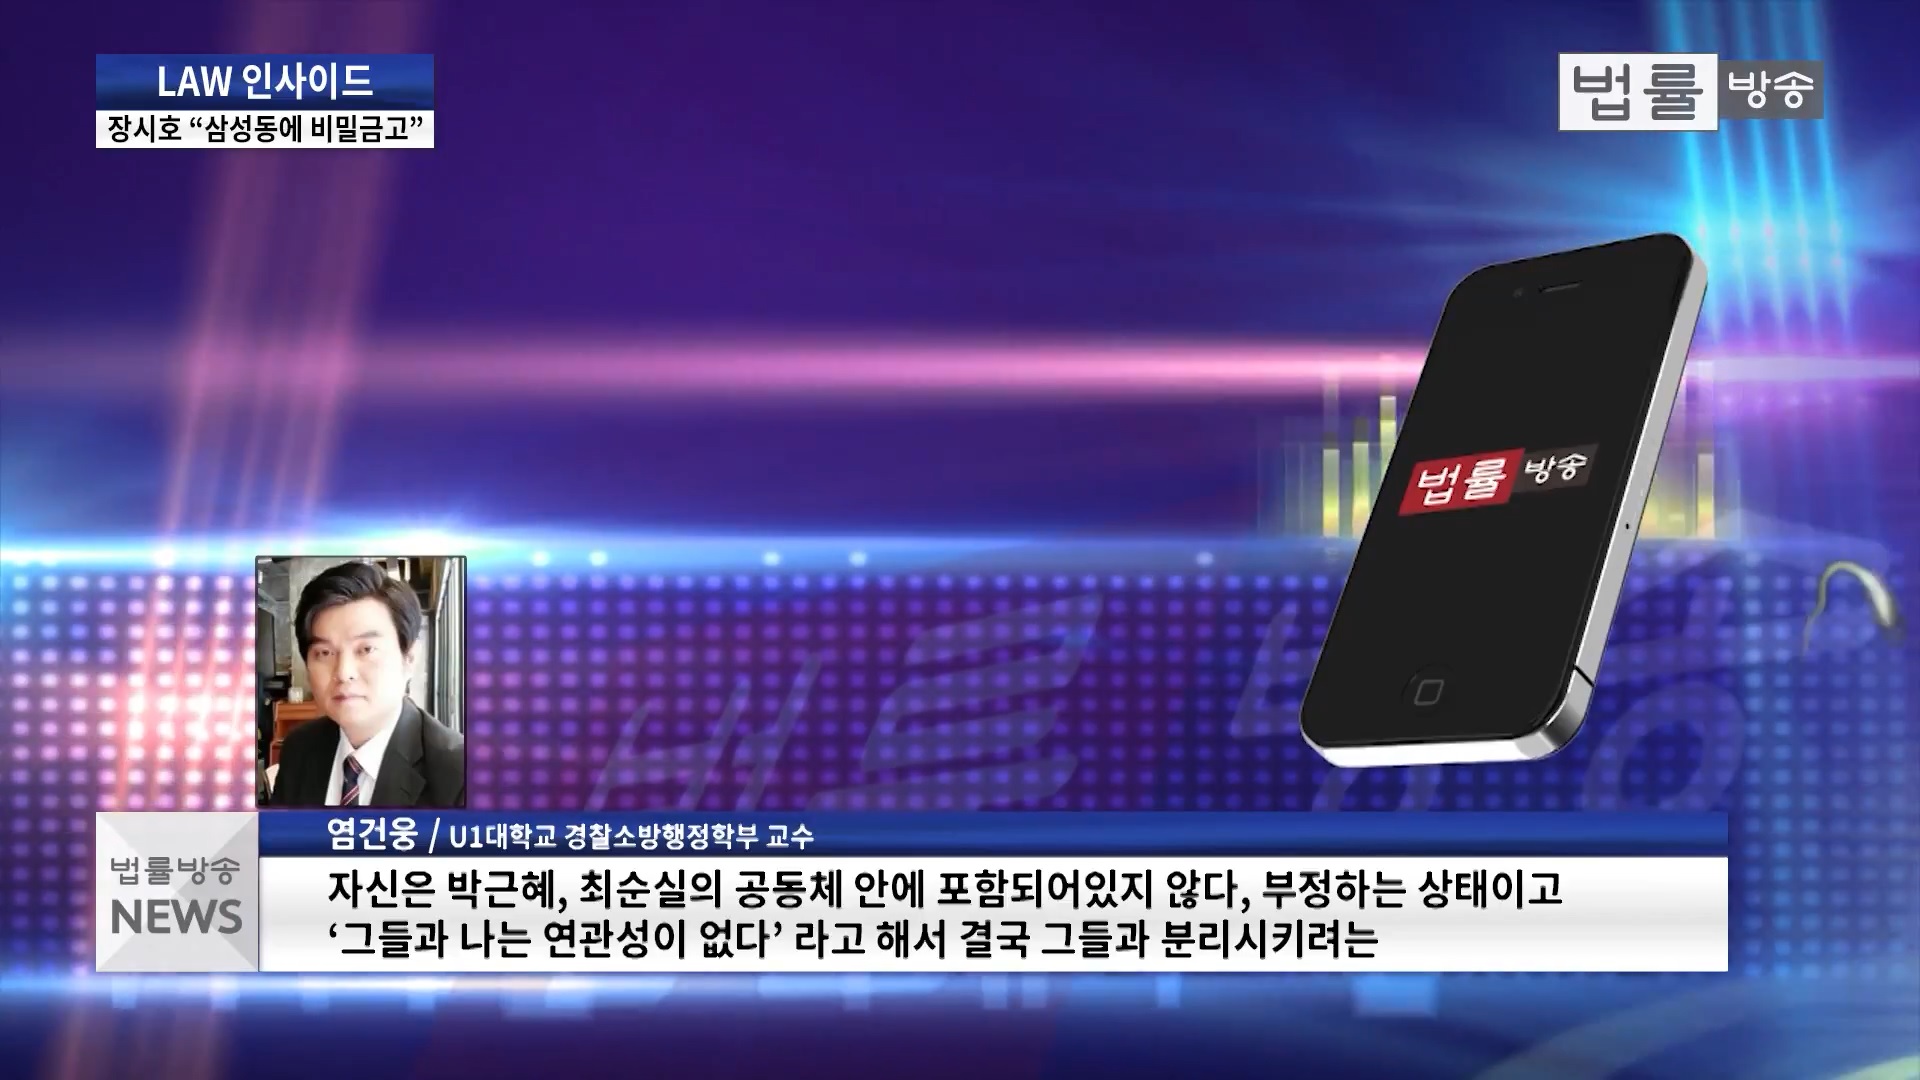 [언론보도] 법률방송 '쏟아내는 장시호 폭탄발언의 이유와 심리는?'(염건웅 교수) 사진1